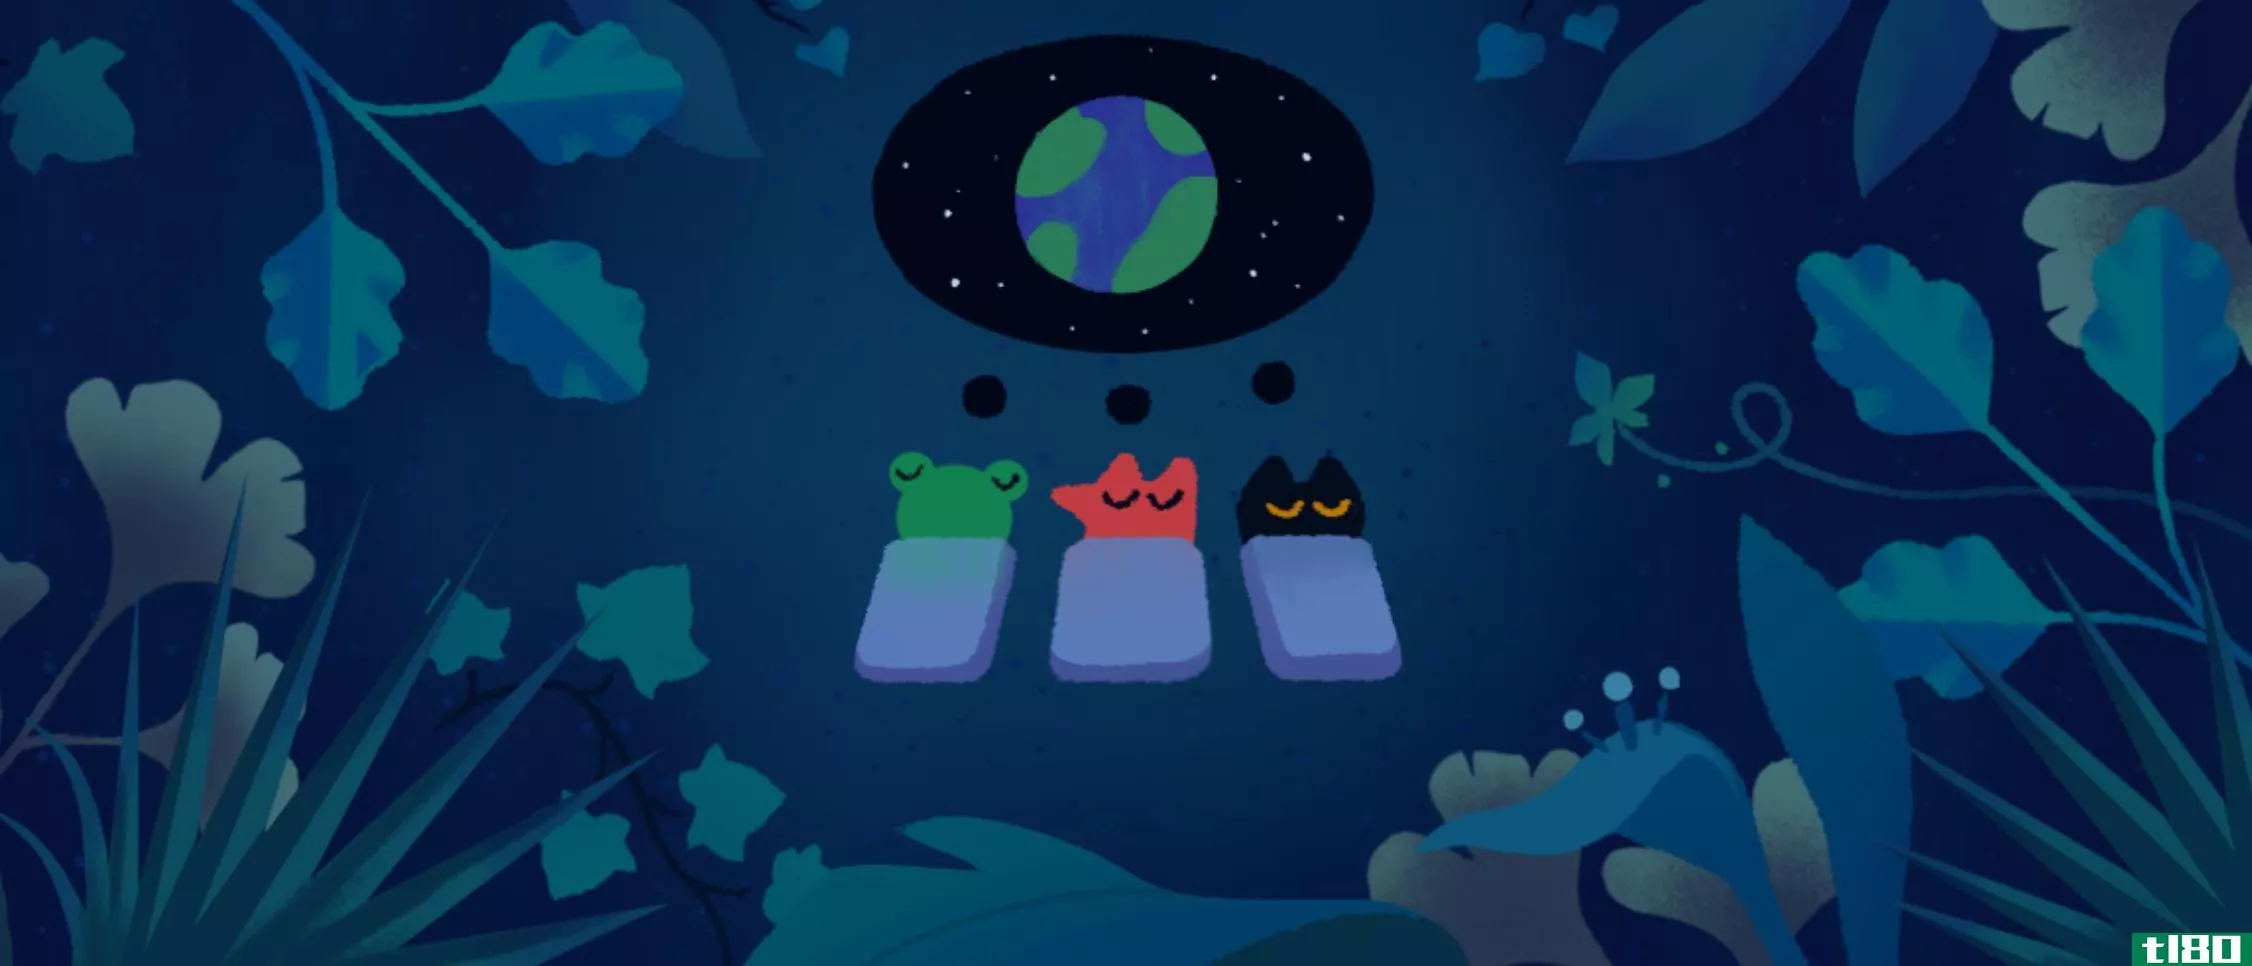 今天的地球日谷歌涂鸦提醒我们要照顾好太阳系中最好的行星